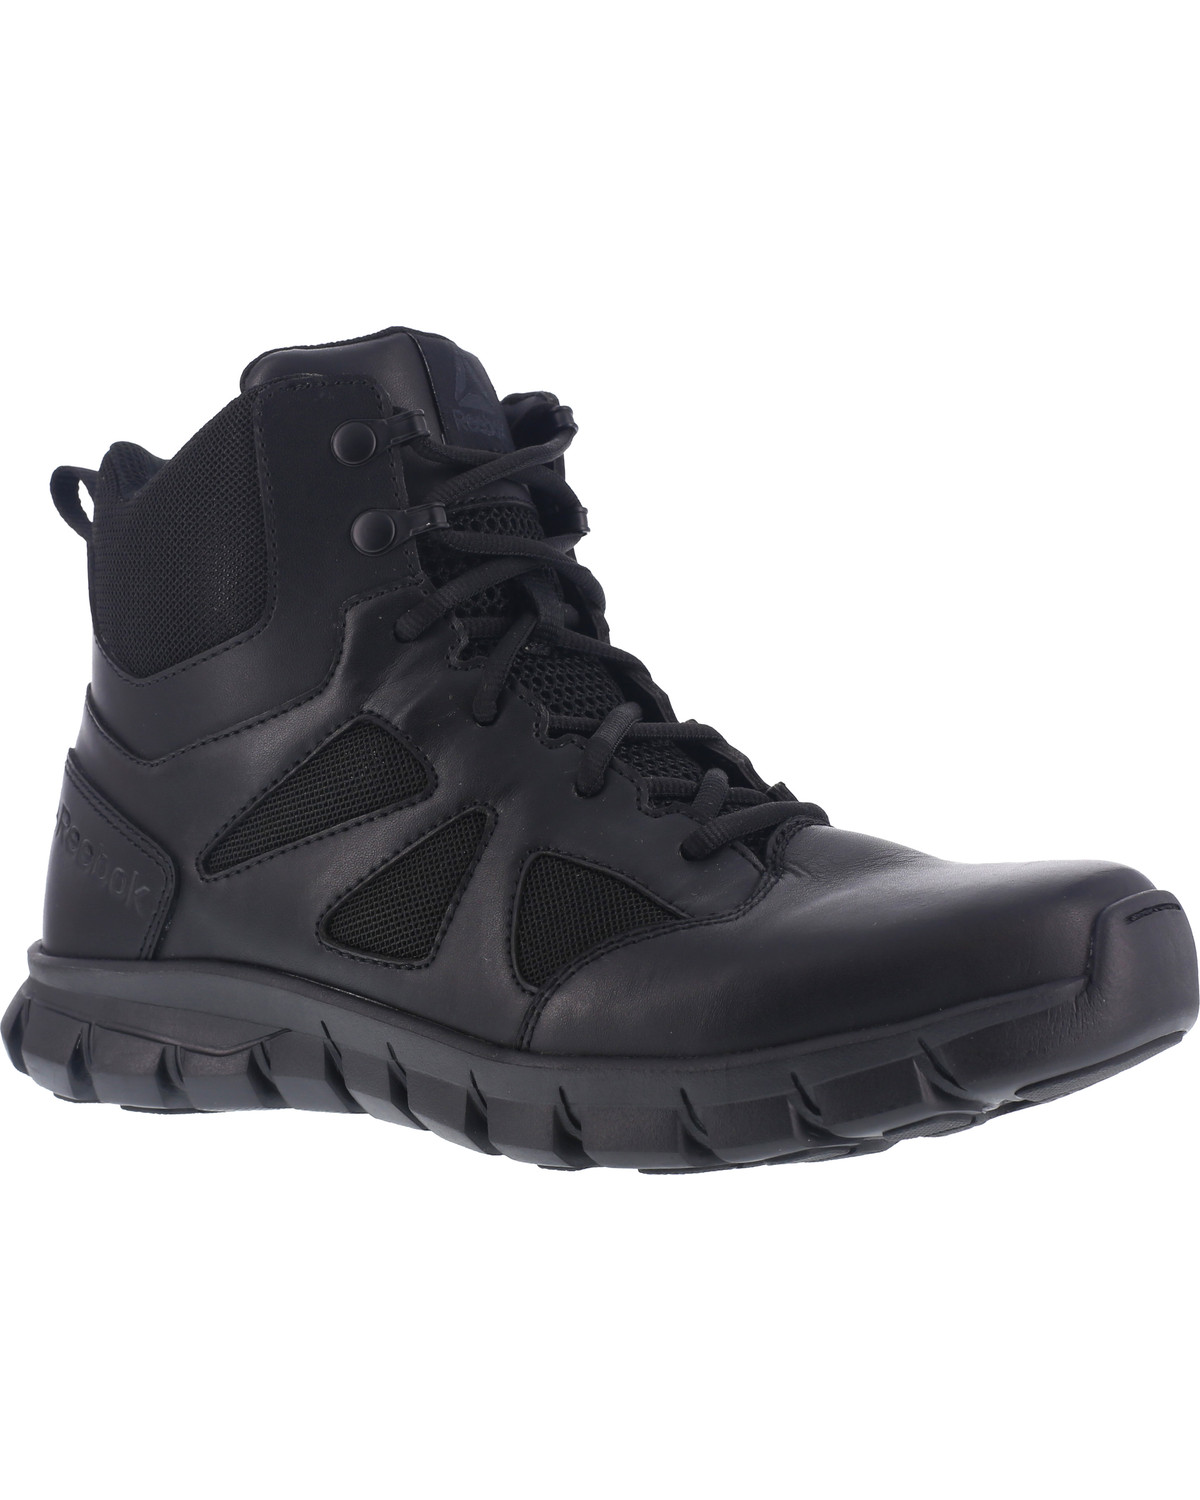 Reebok Men's 6" Sublite Cushion Tactical Shoes - Soft Toe